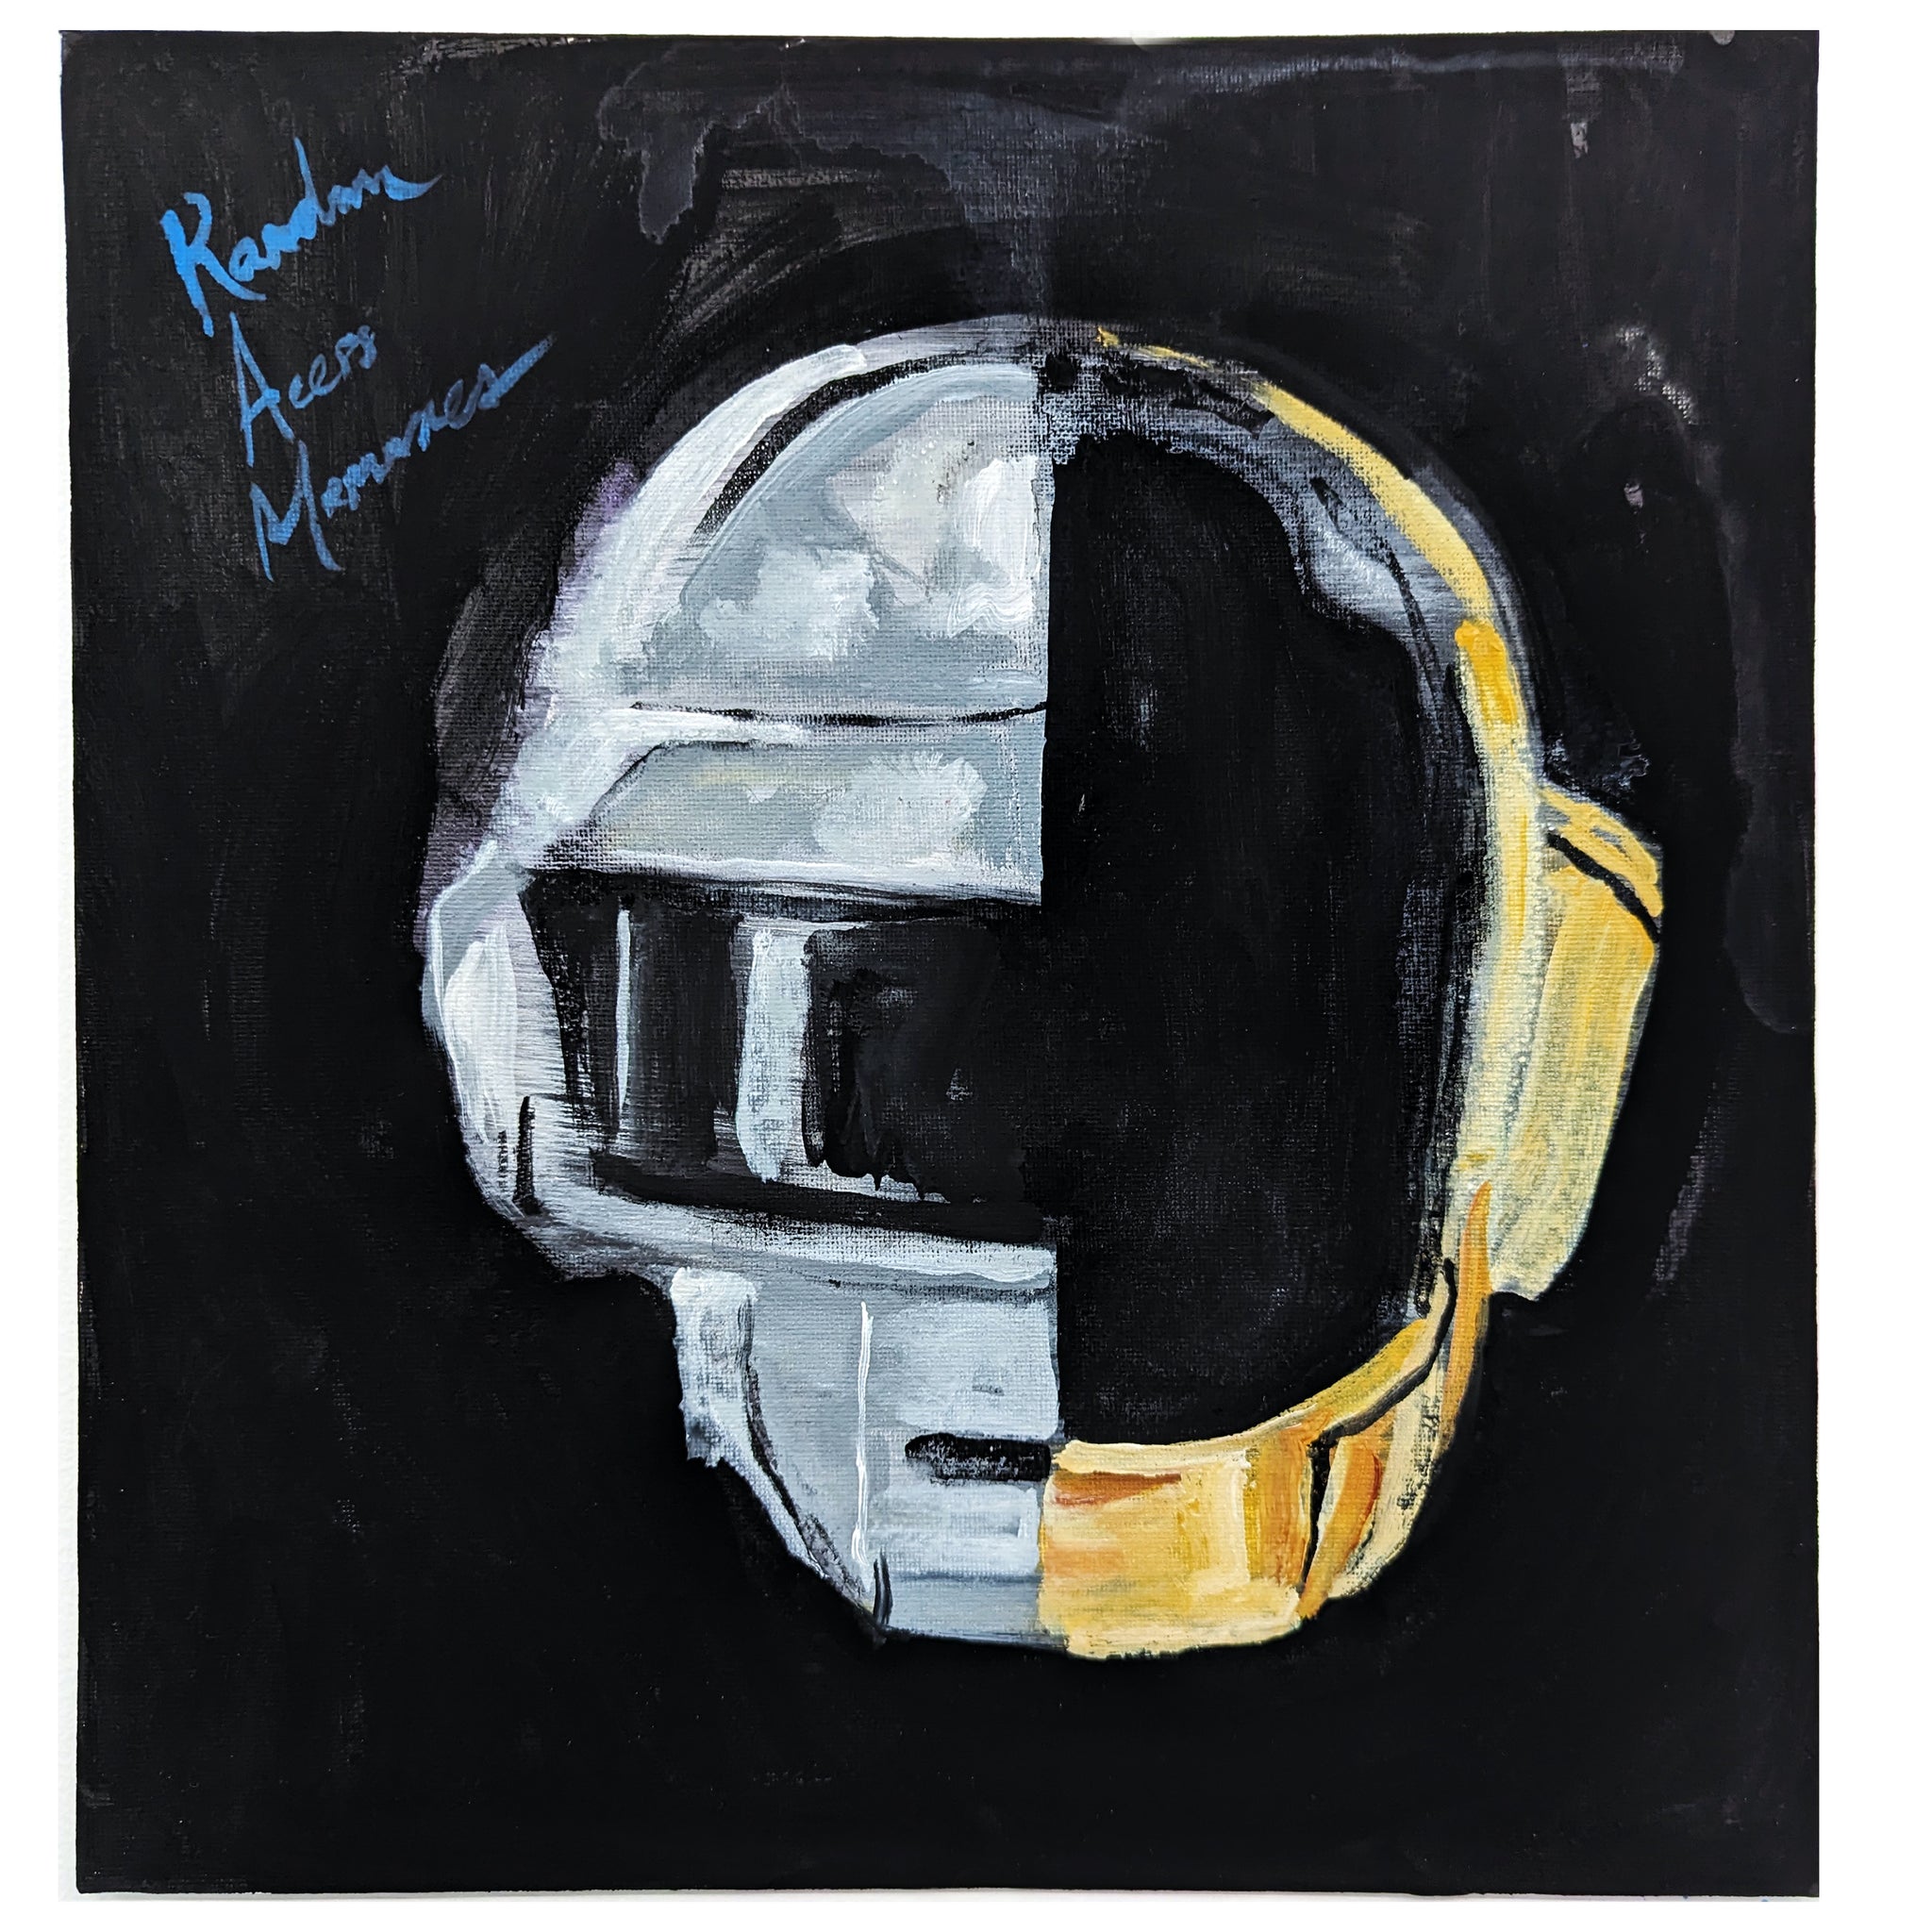 Jac Lahav, "Daft Punk (Random Access Memories)"